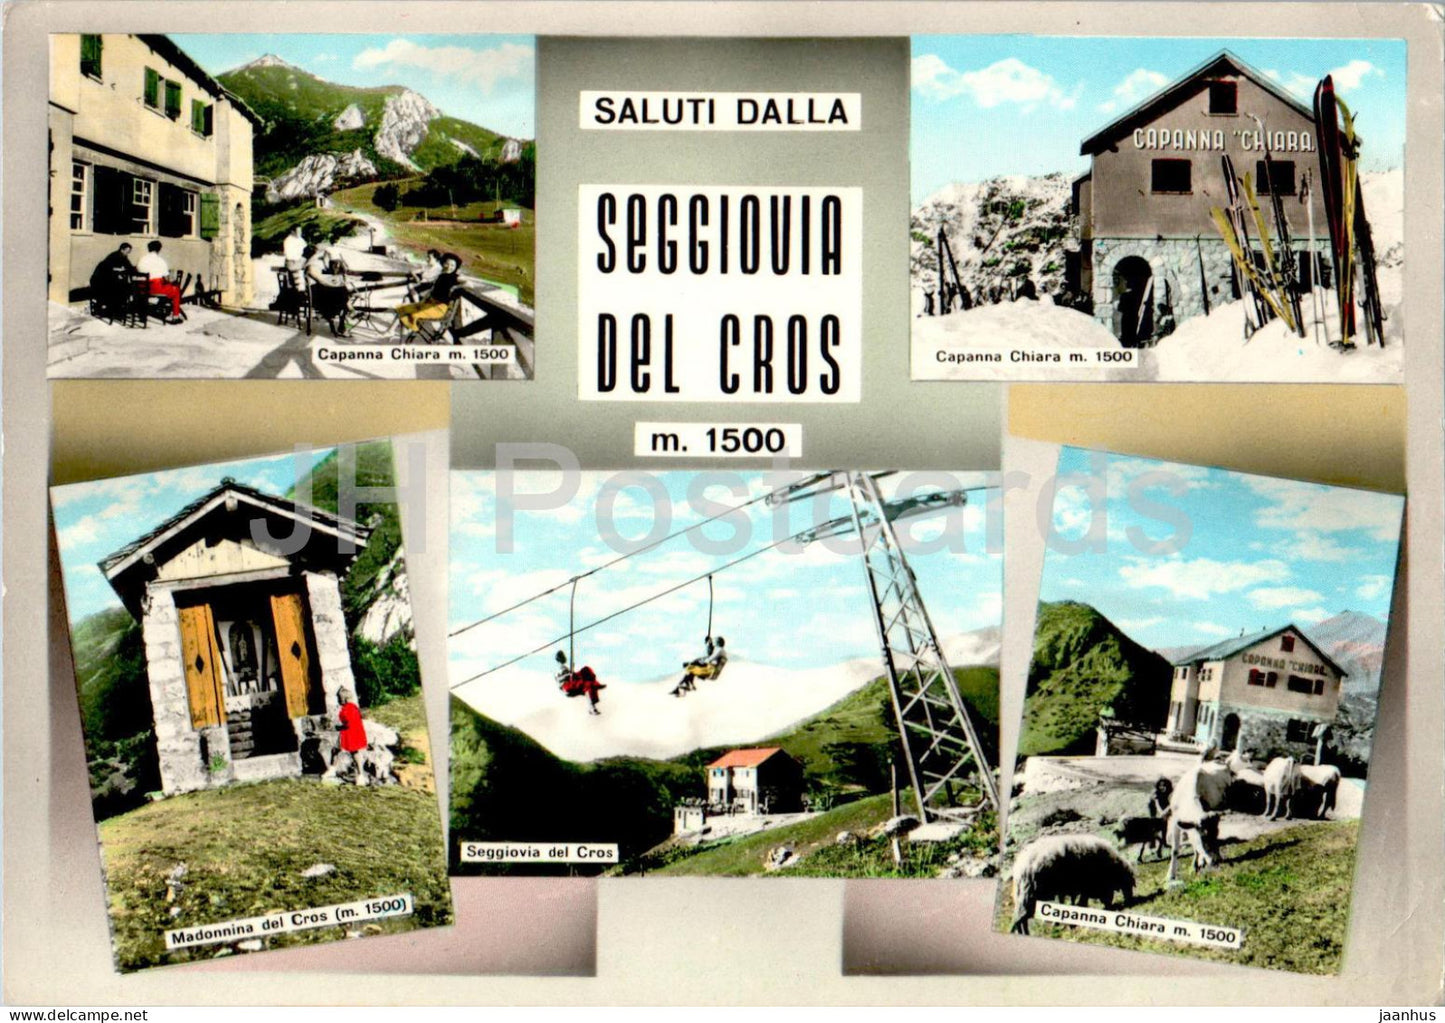 Saluti dalla Seggiovia Del Cros m 1500 -  Capanna Chiara - Madonnina del Cros - skilift - 125 - 1963 - Italy - used - JH Postcards